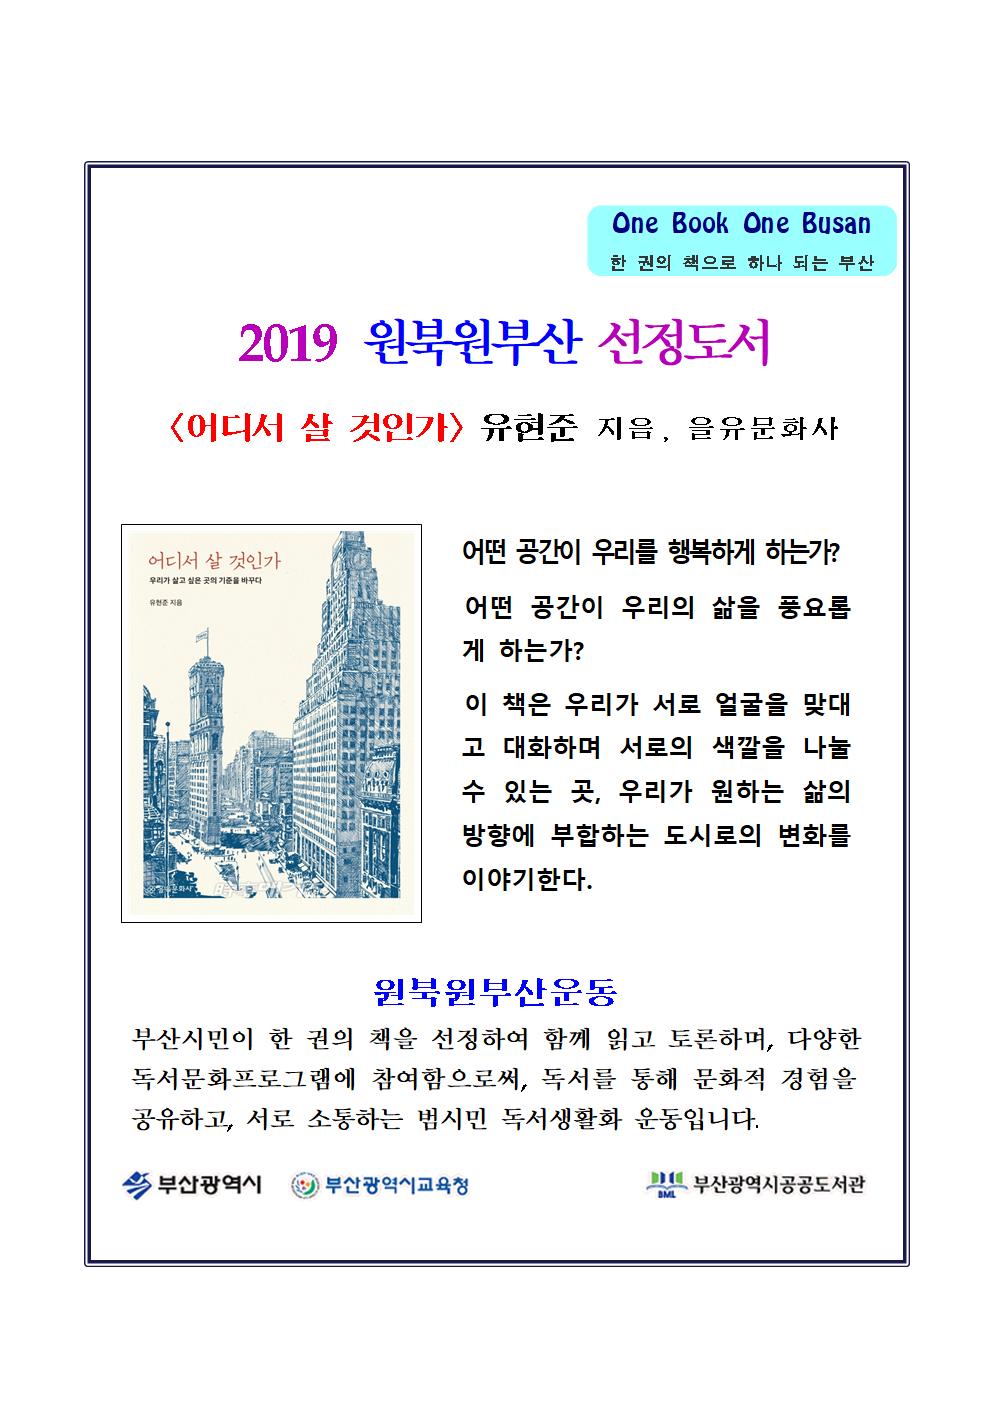 2019년 원북 선정도서 알림 및 도서대출안내